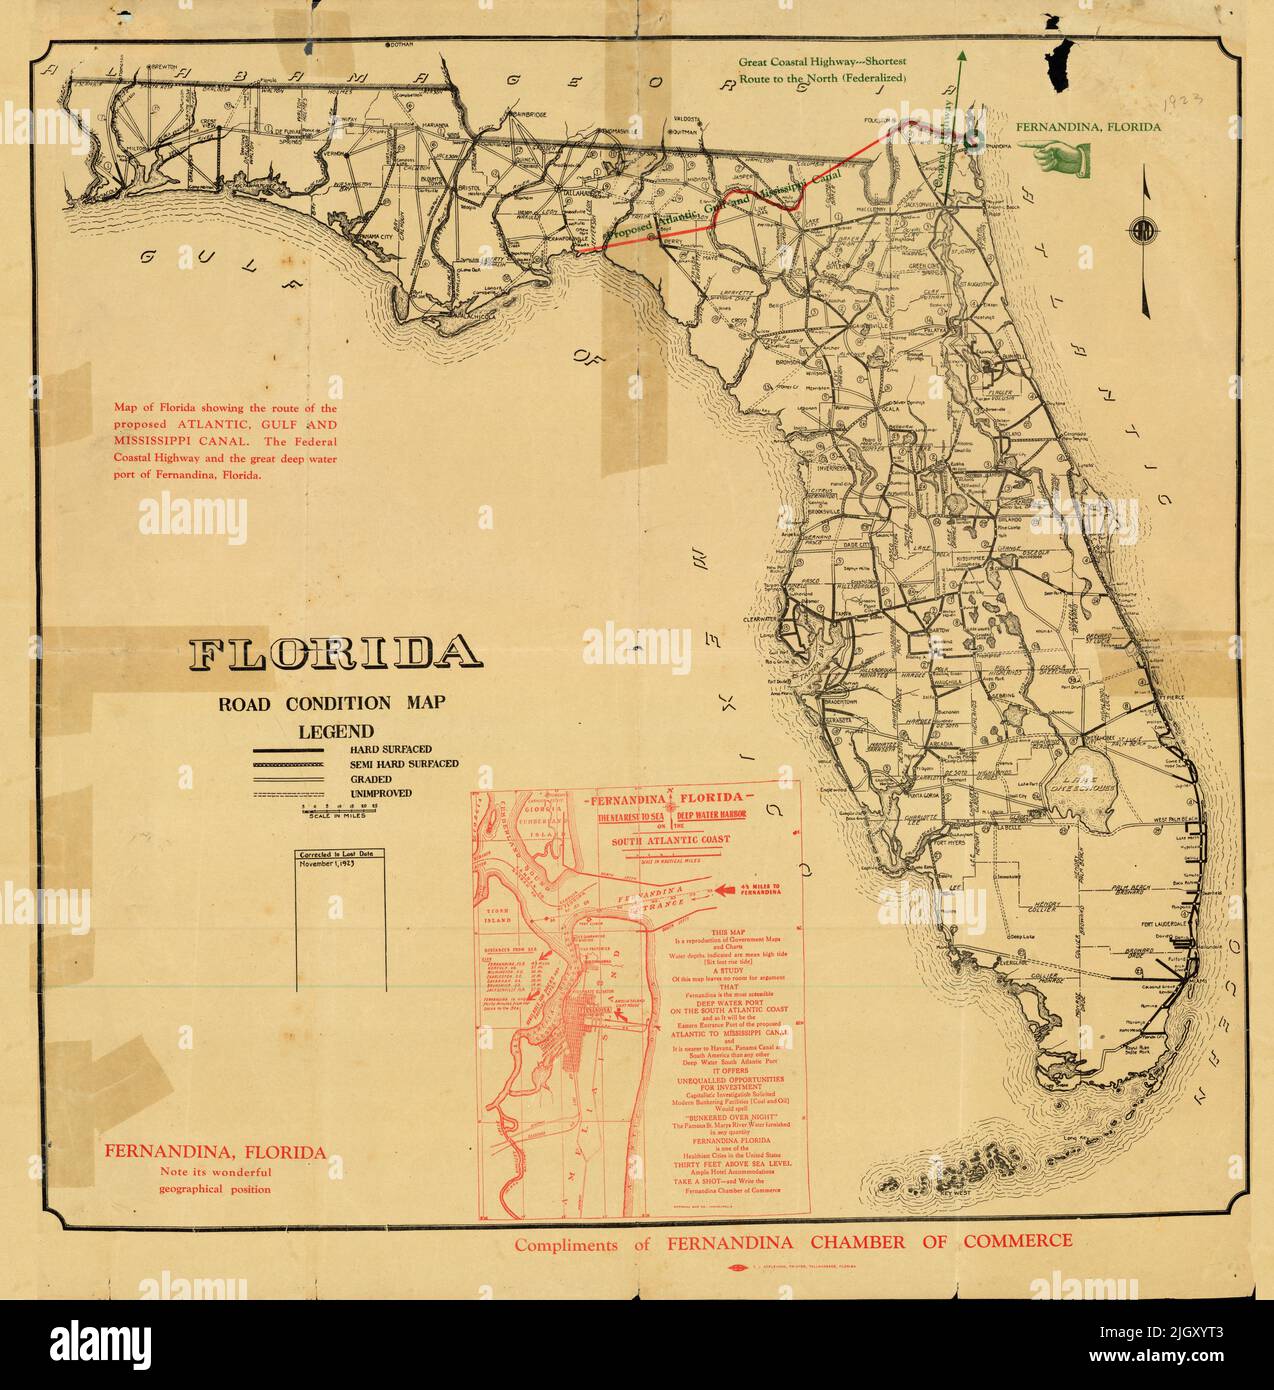 Florida Road Condition Map, zeigt die Route des geplanten Atlantik-, Golf- und Mississippi-Kanals, des Federal Coastal Highway und des großen Tiefwasserhafens Fernandina, 1923, von der Handelskammer Fernandina Stockfoto